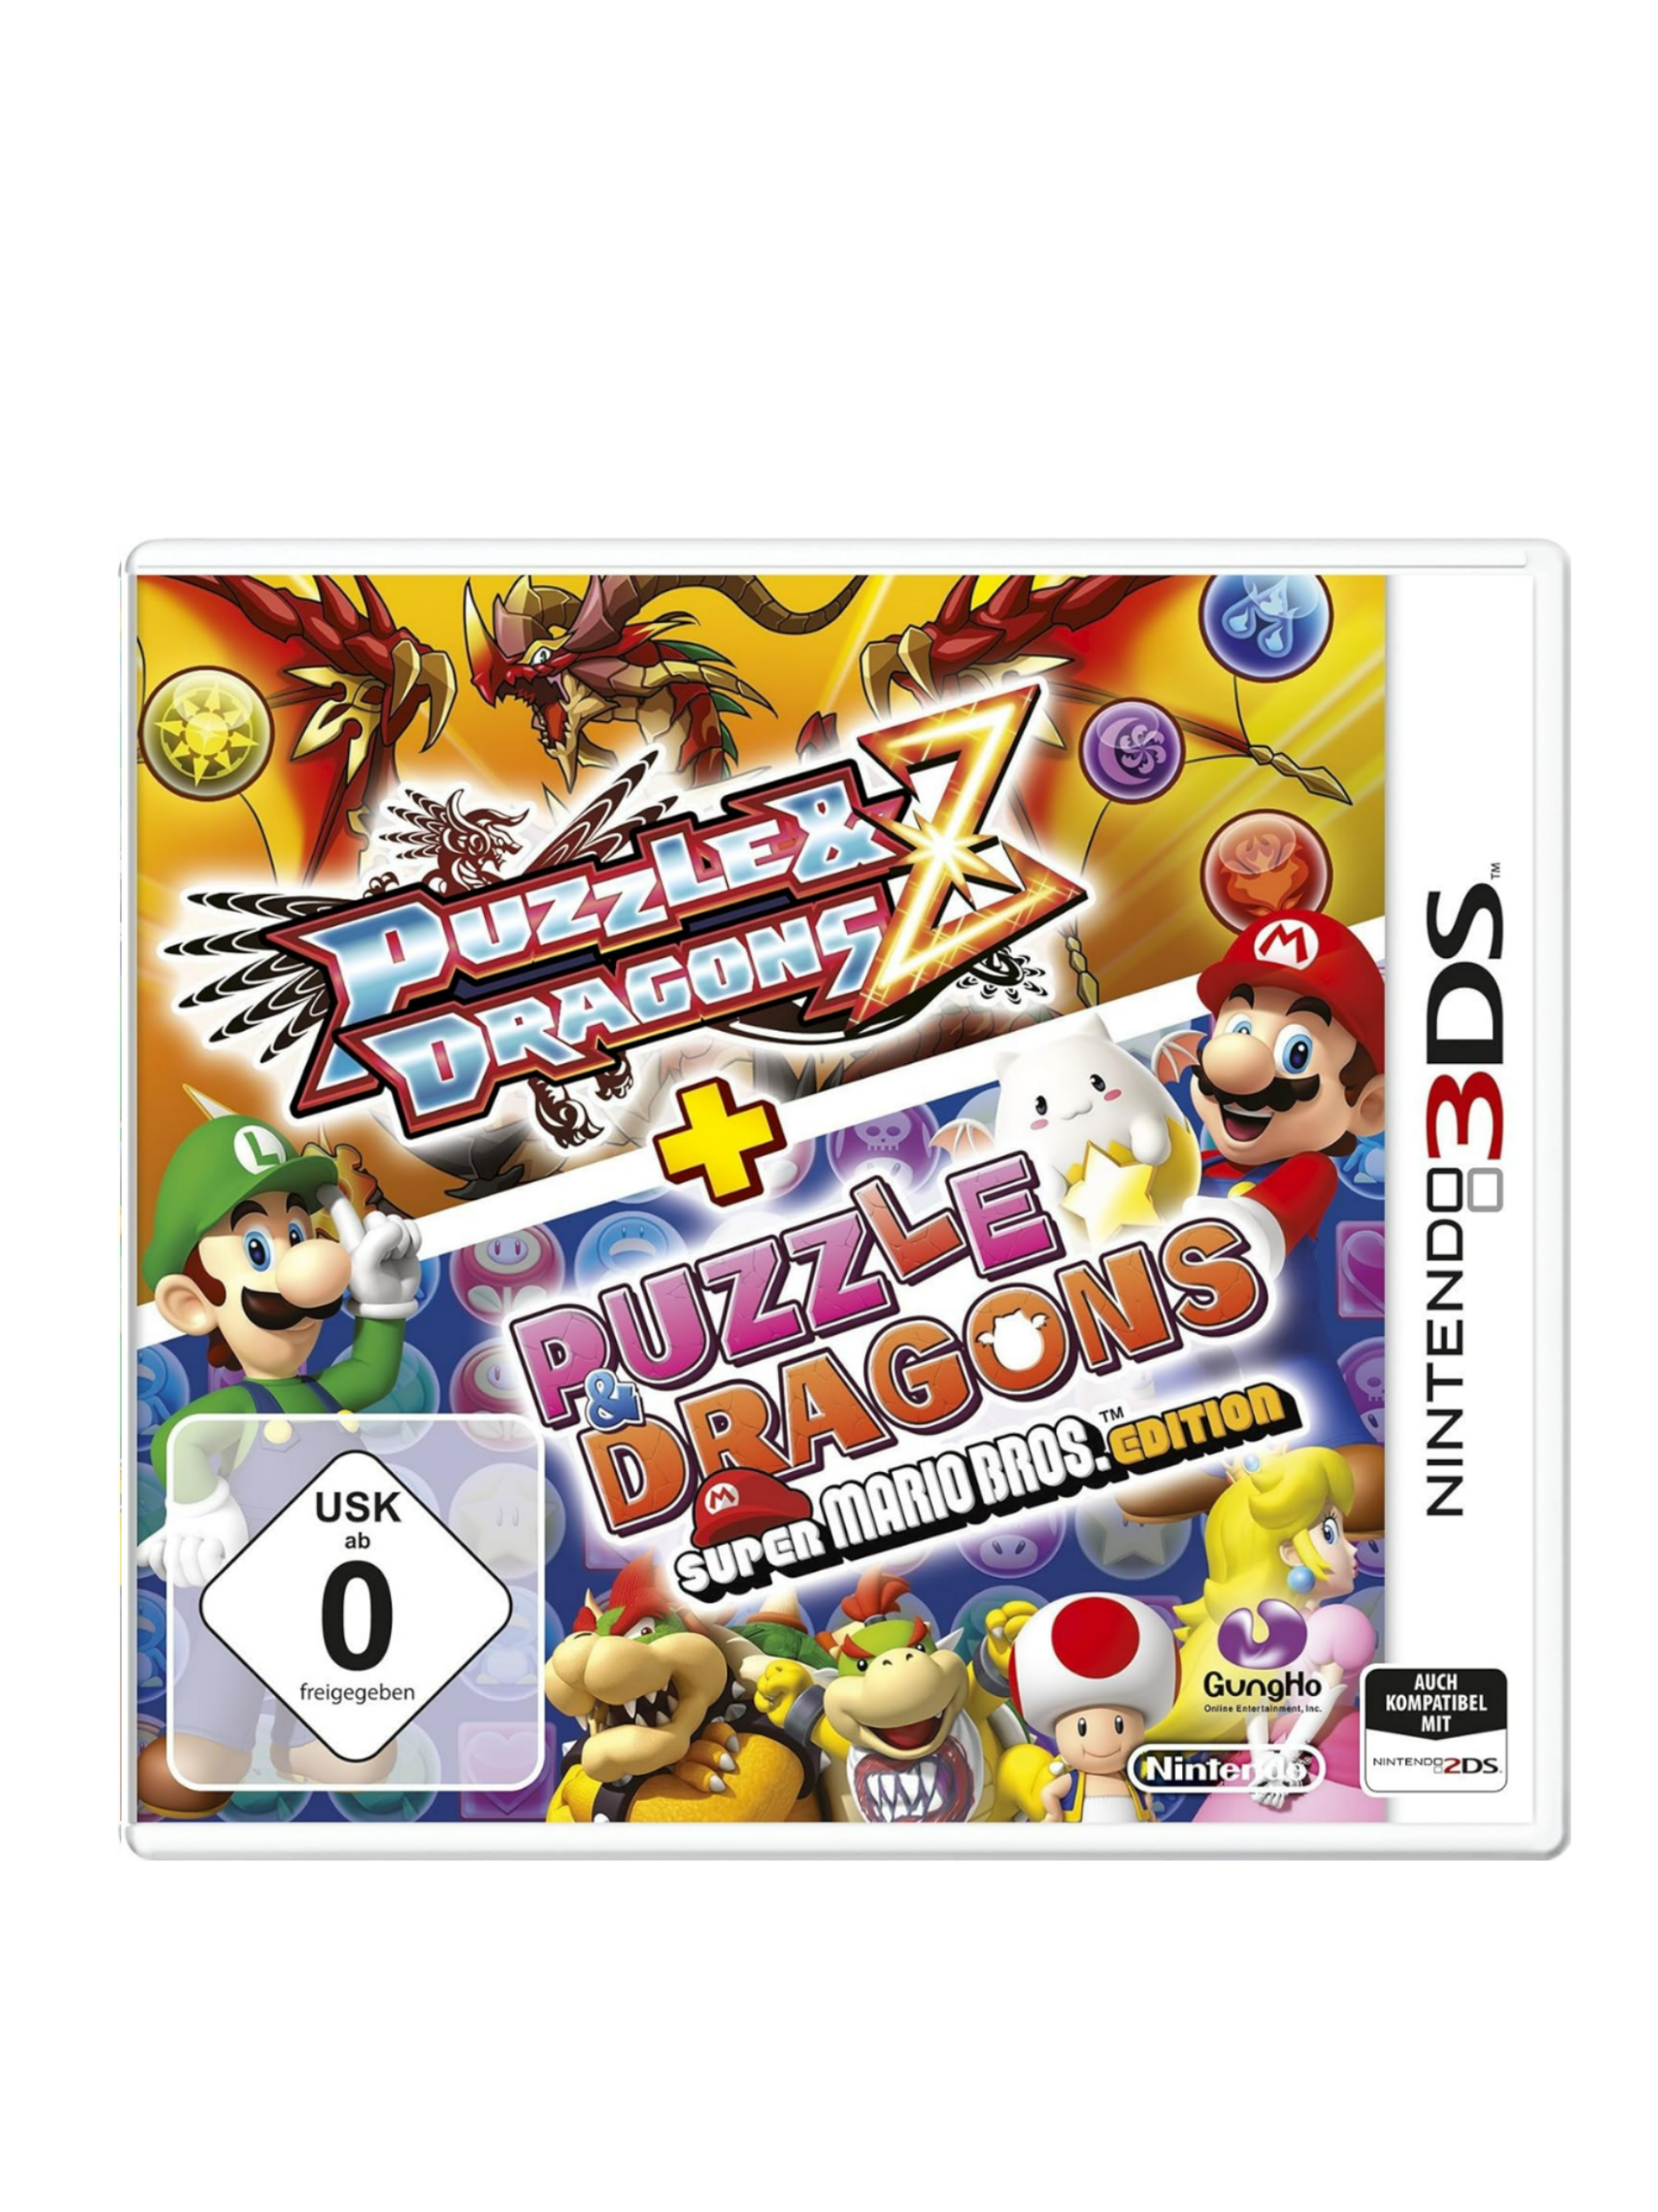 Puzzle & Dragons Z + Puzzle Dragons Super Mario Bros. Edition Nintendo 3DS